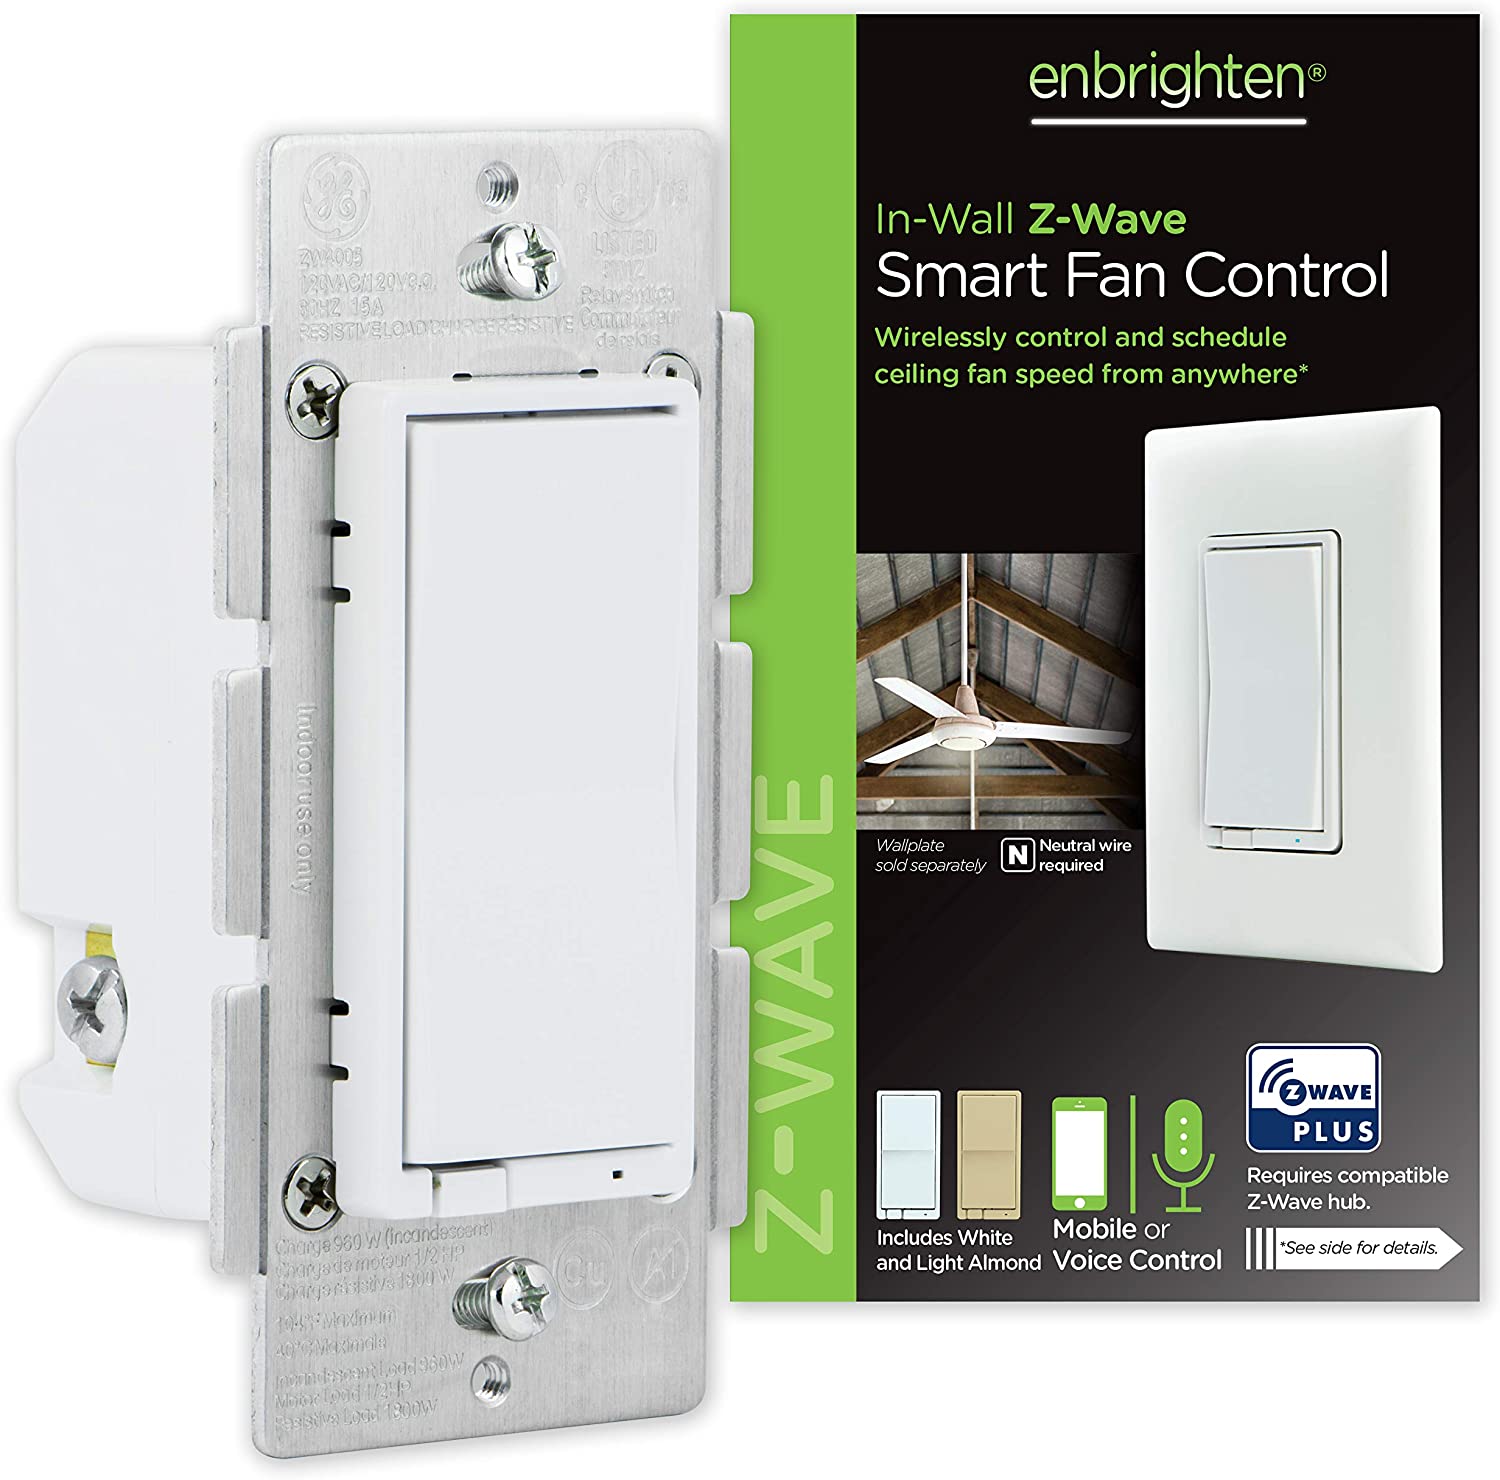 GE Enbrighten In-Wall Z-Wave Plus Smart Fan Control with